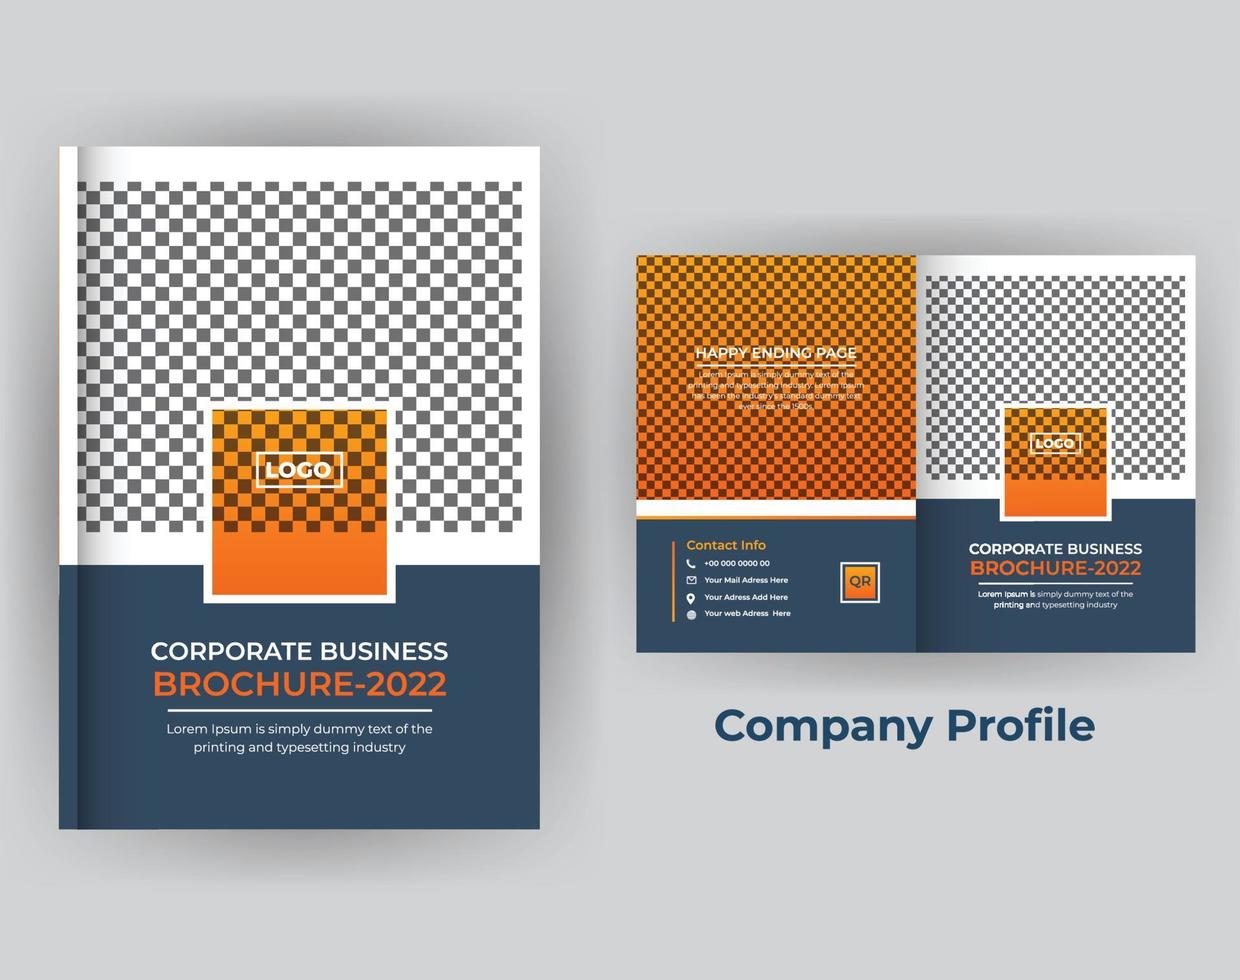 Company profile business brochure annual report design template vector